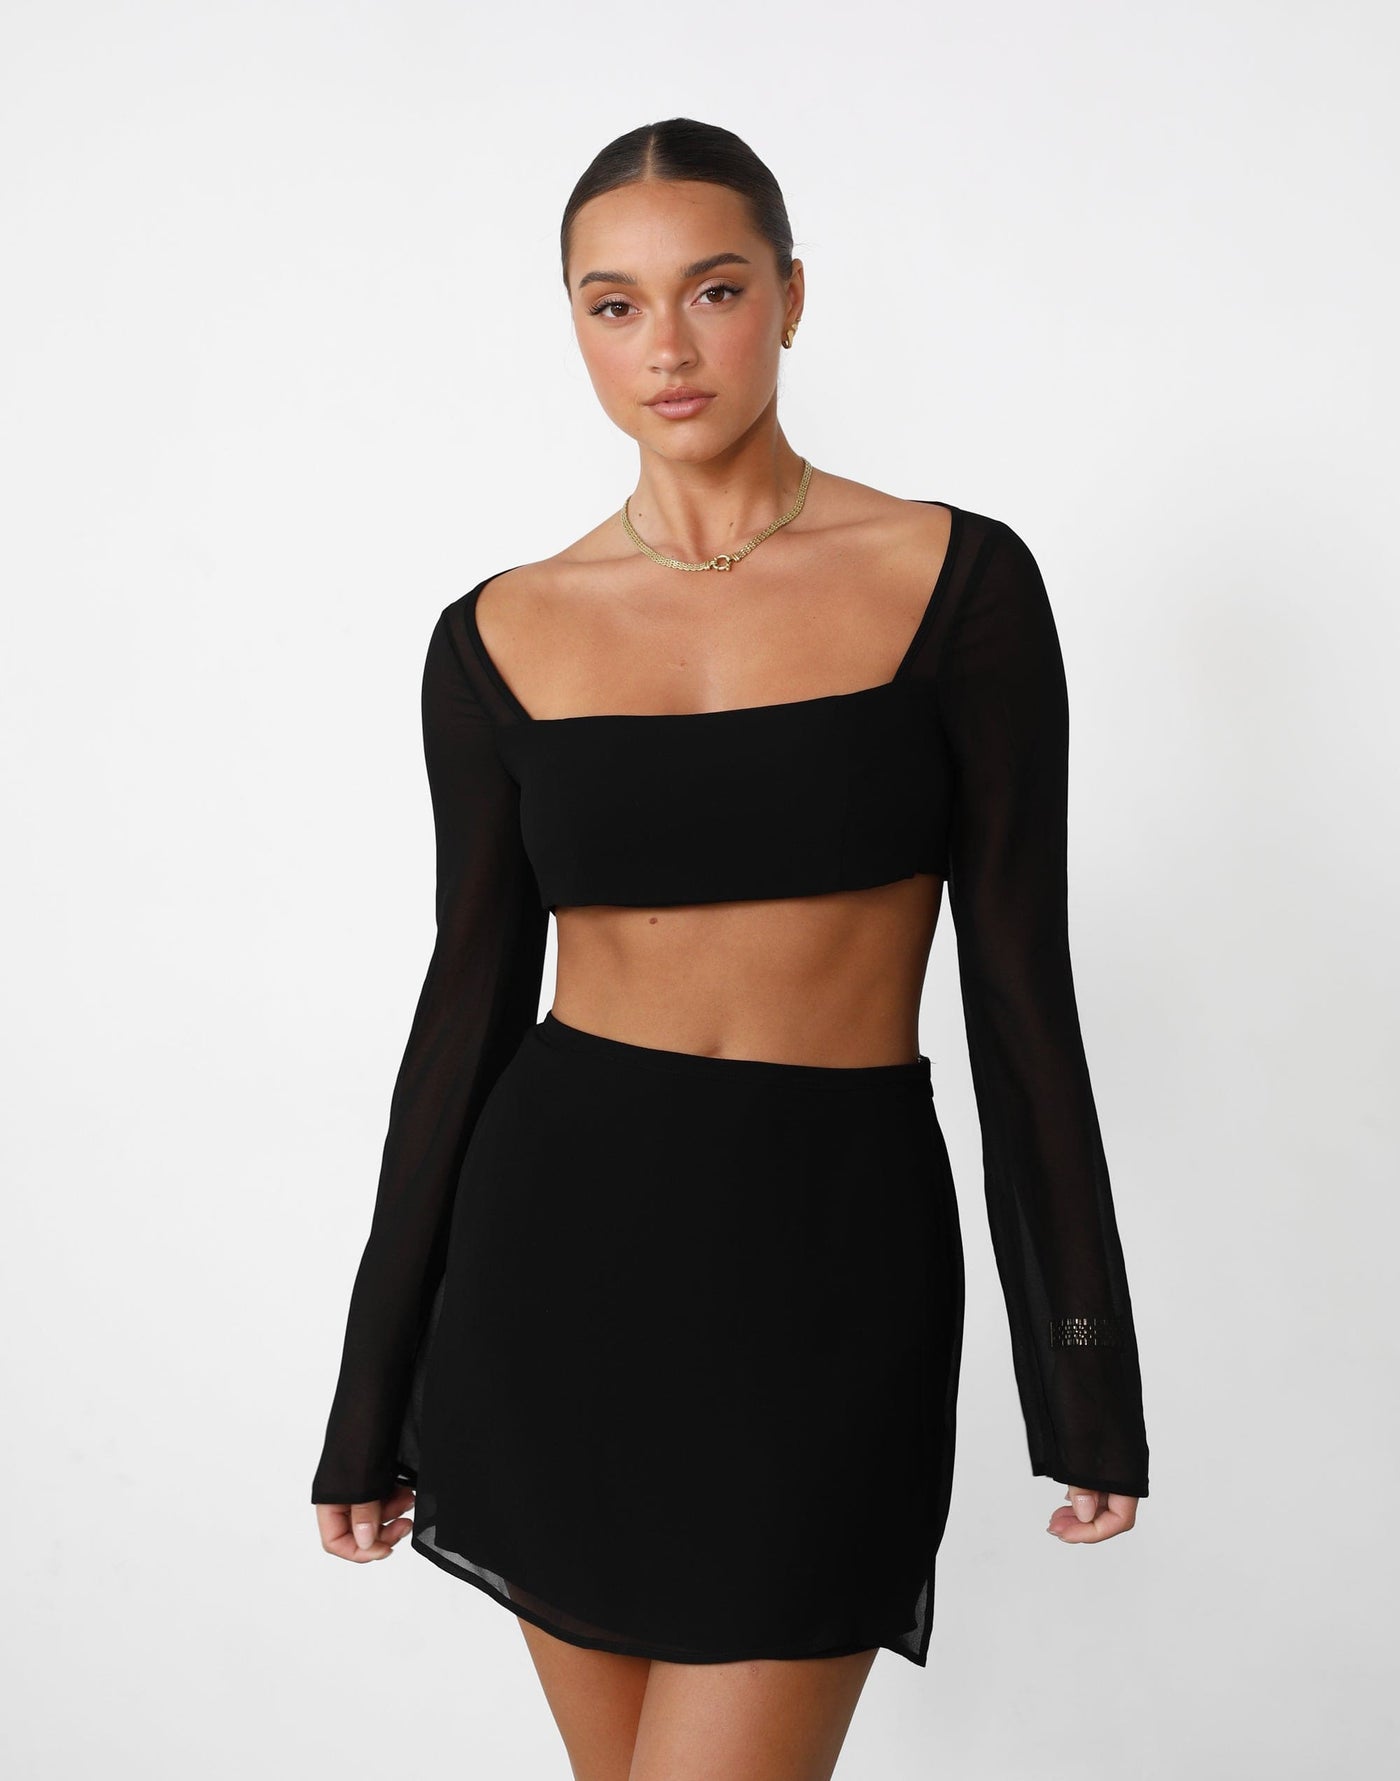 Abby Mini Skirt (Black) - Black High Waisted Mini Skirt - Women's Skirt - Charcoal Clothing